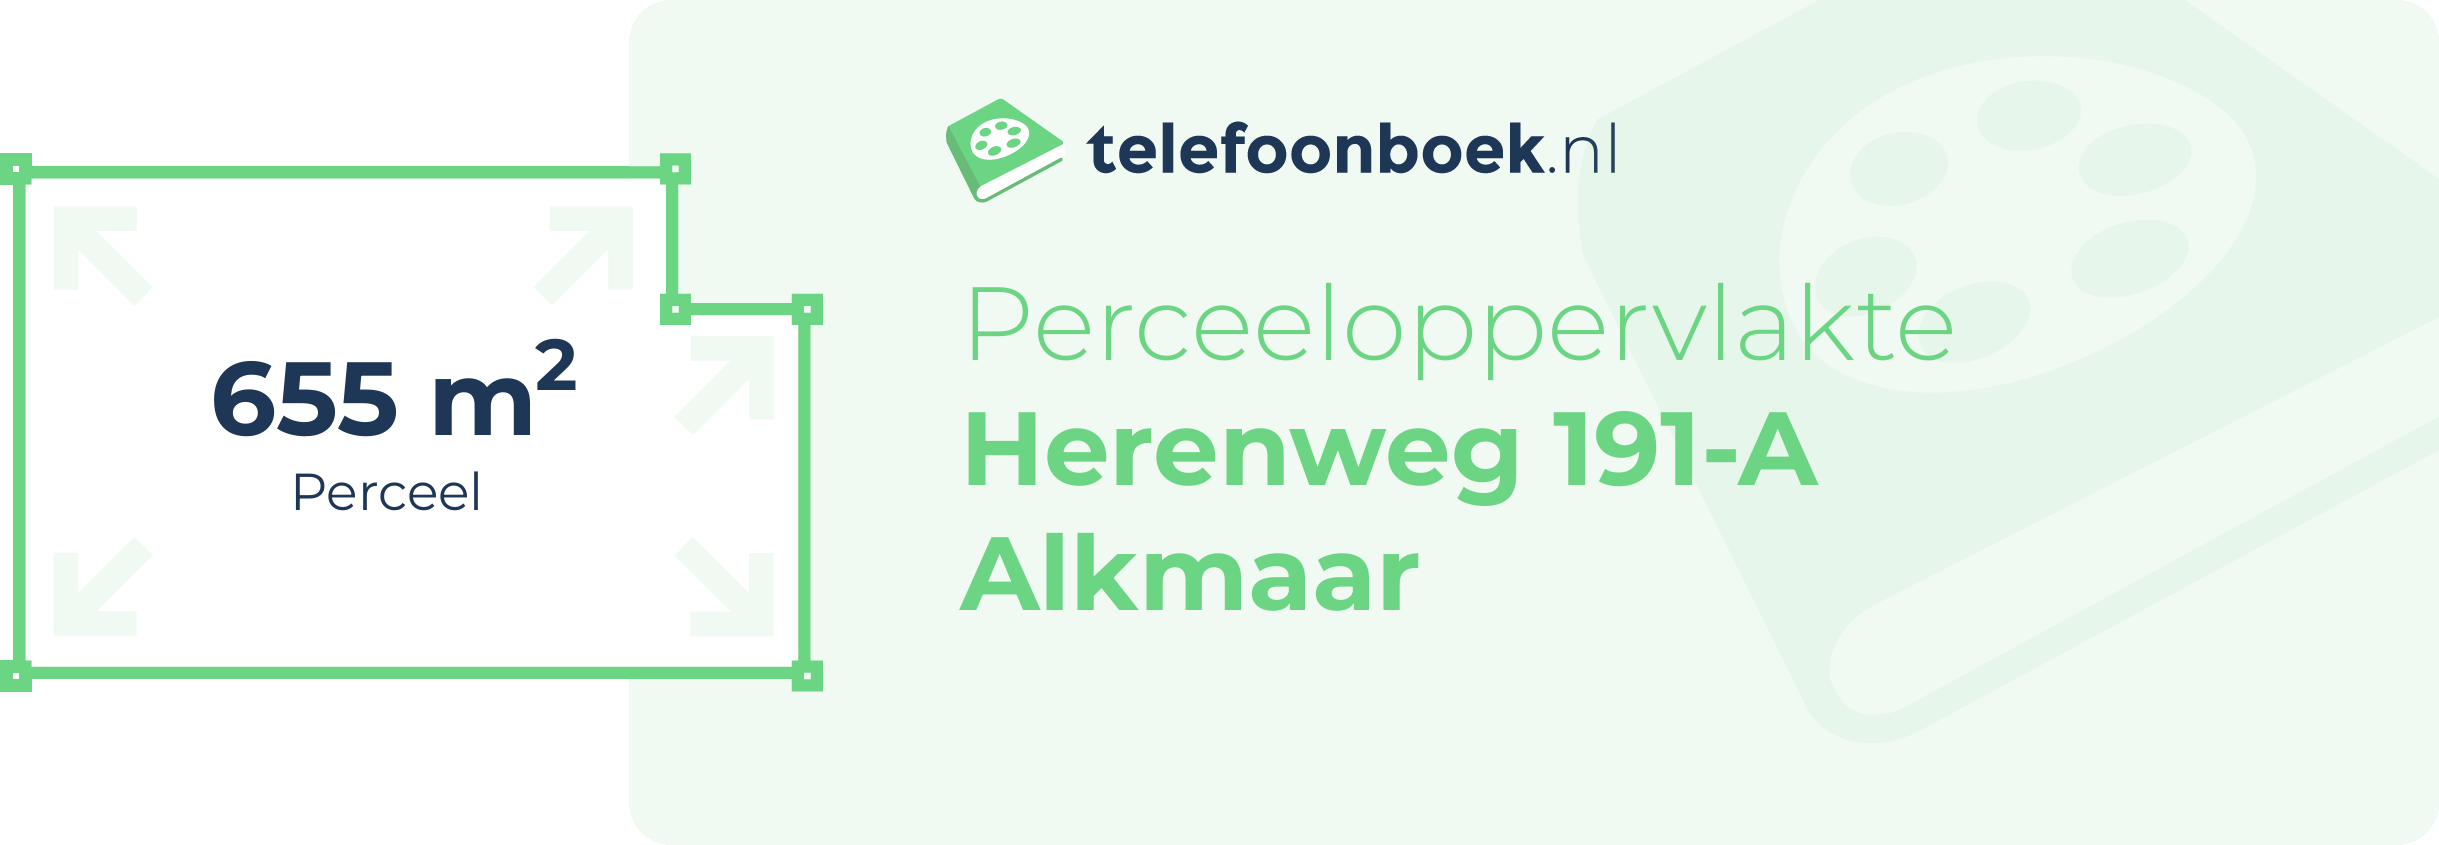 Perceeloppervlakte Herenweg 191-A Alkmaar